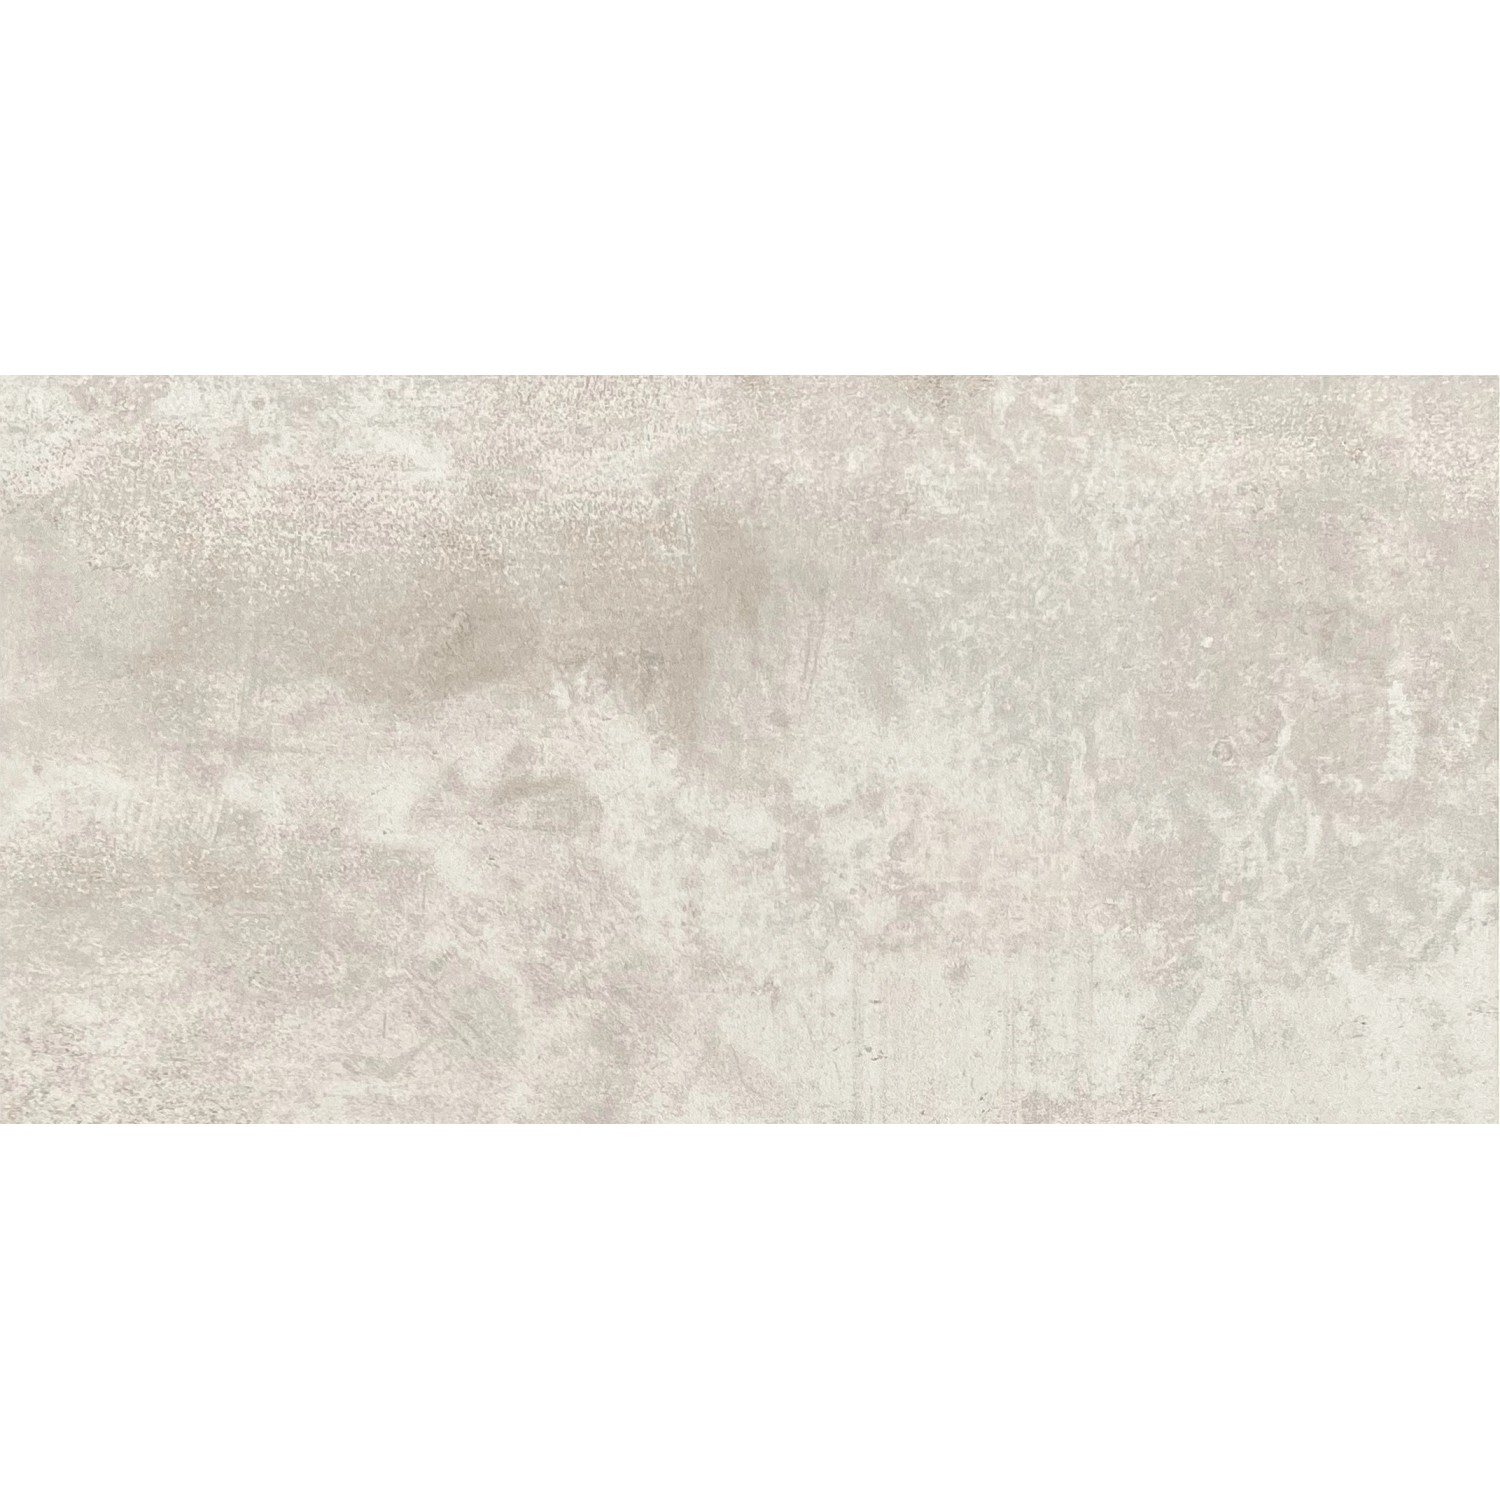 Bodenfliese Metallique Lappato Feinsteinzeug Weiß Glasiert 30 cm x 60 cm